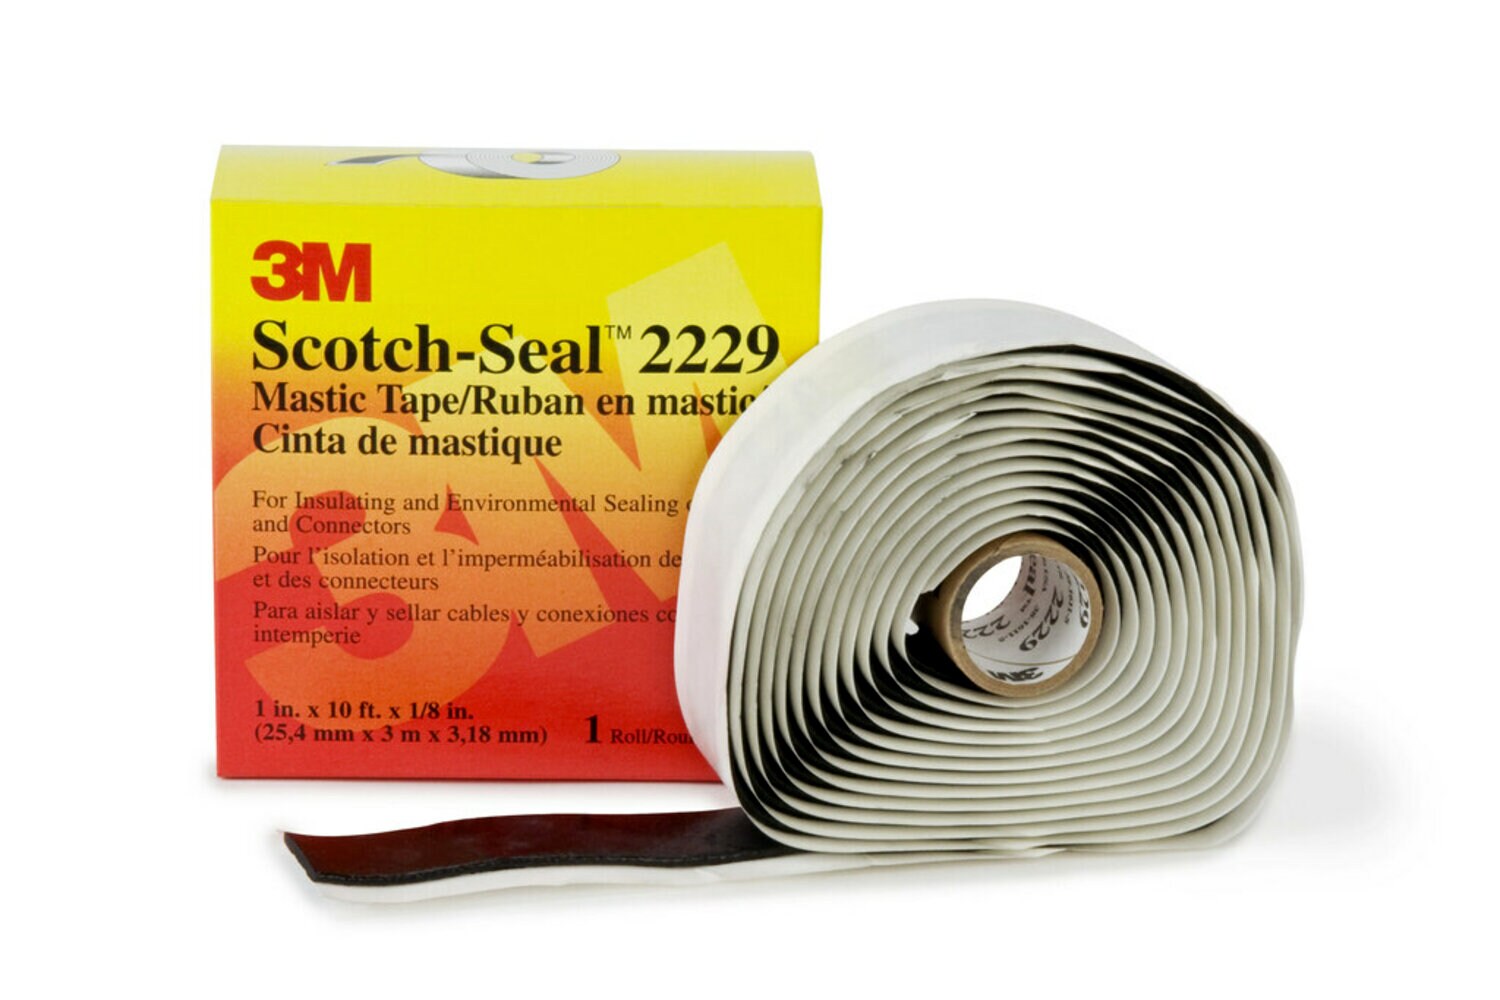 7010397013 - 3M Scotch-Seal Mastic Tape Compound 2229, 3-3/4 in X 3-3/4 in, Black,
25 pads/carton, 100 pads/Case